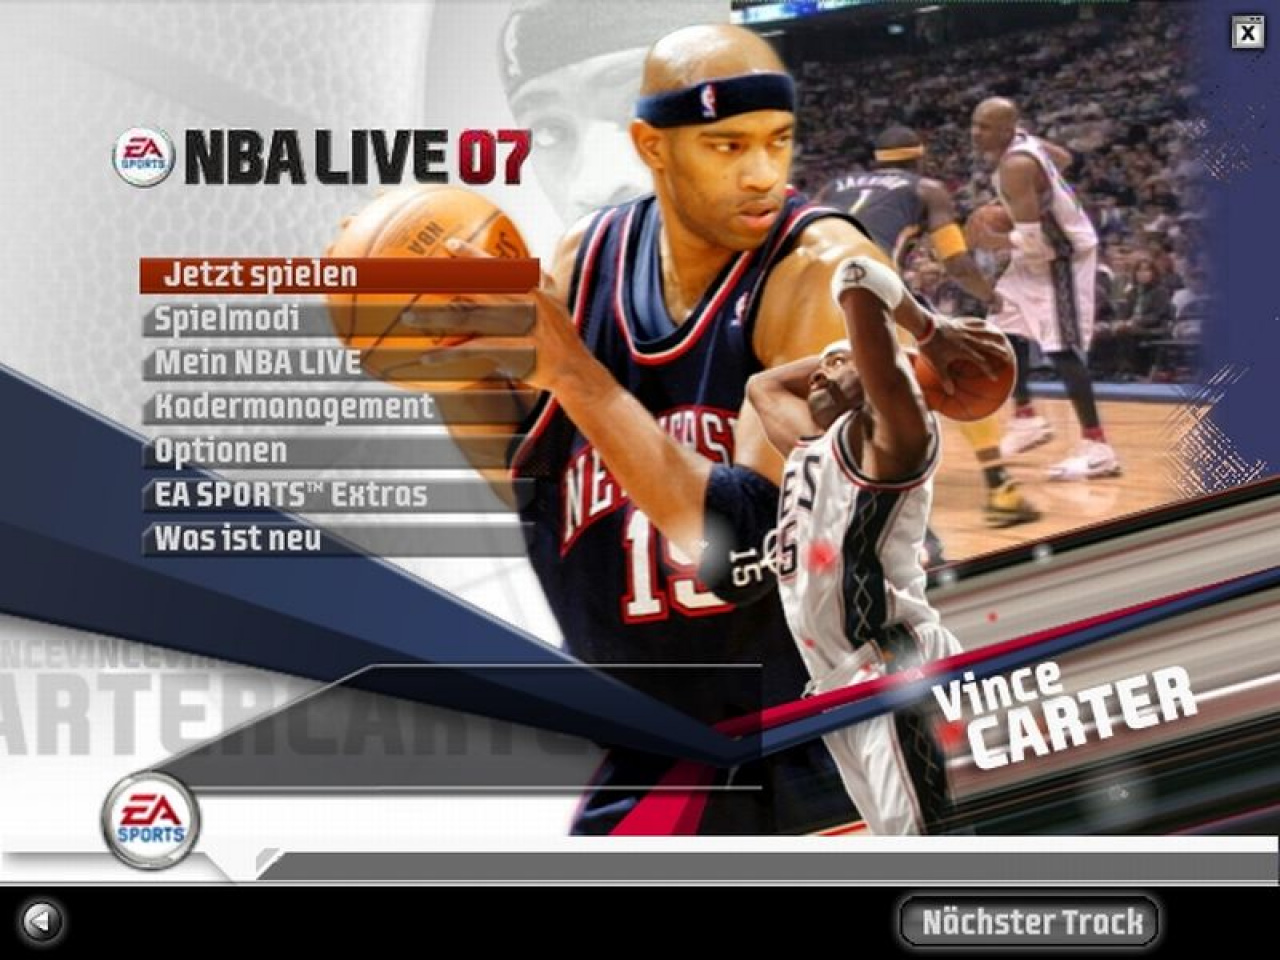 NBA Live 07 Media